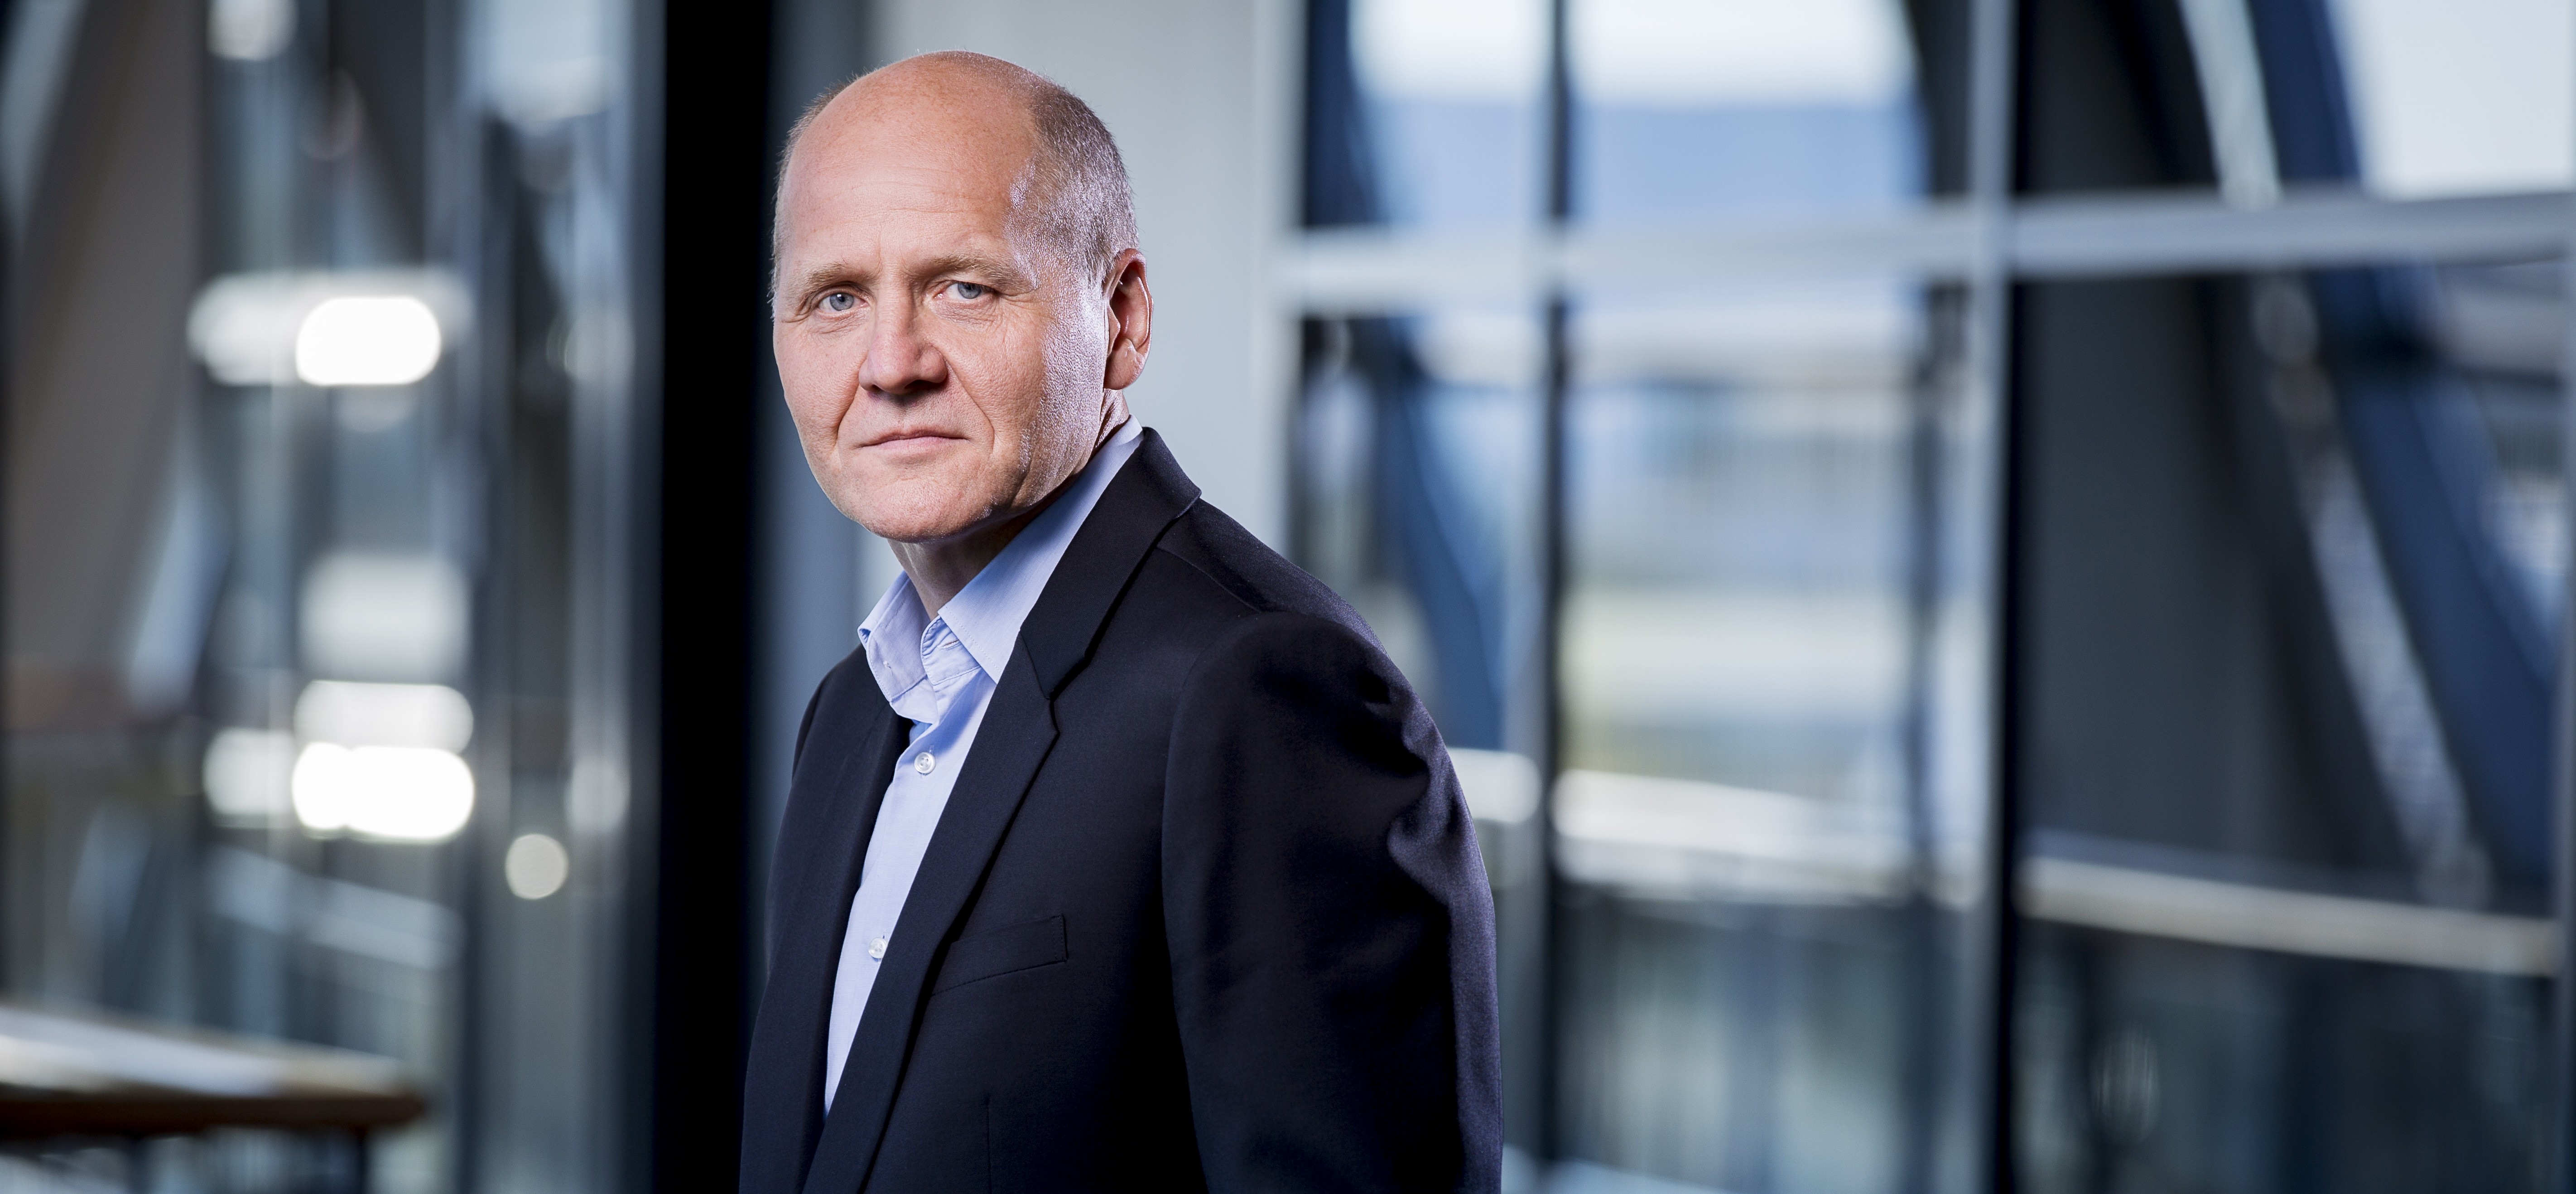 Sigve Brekke Telenor president and CEO